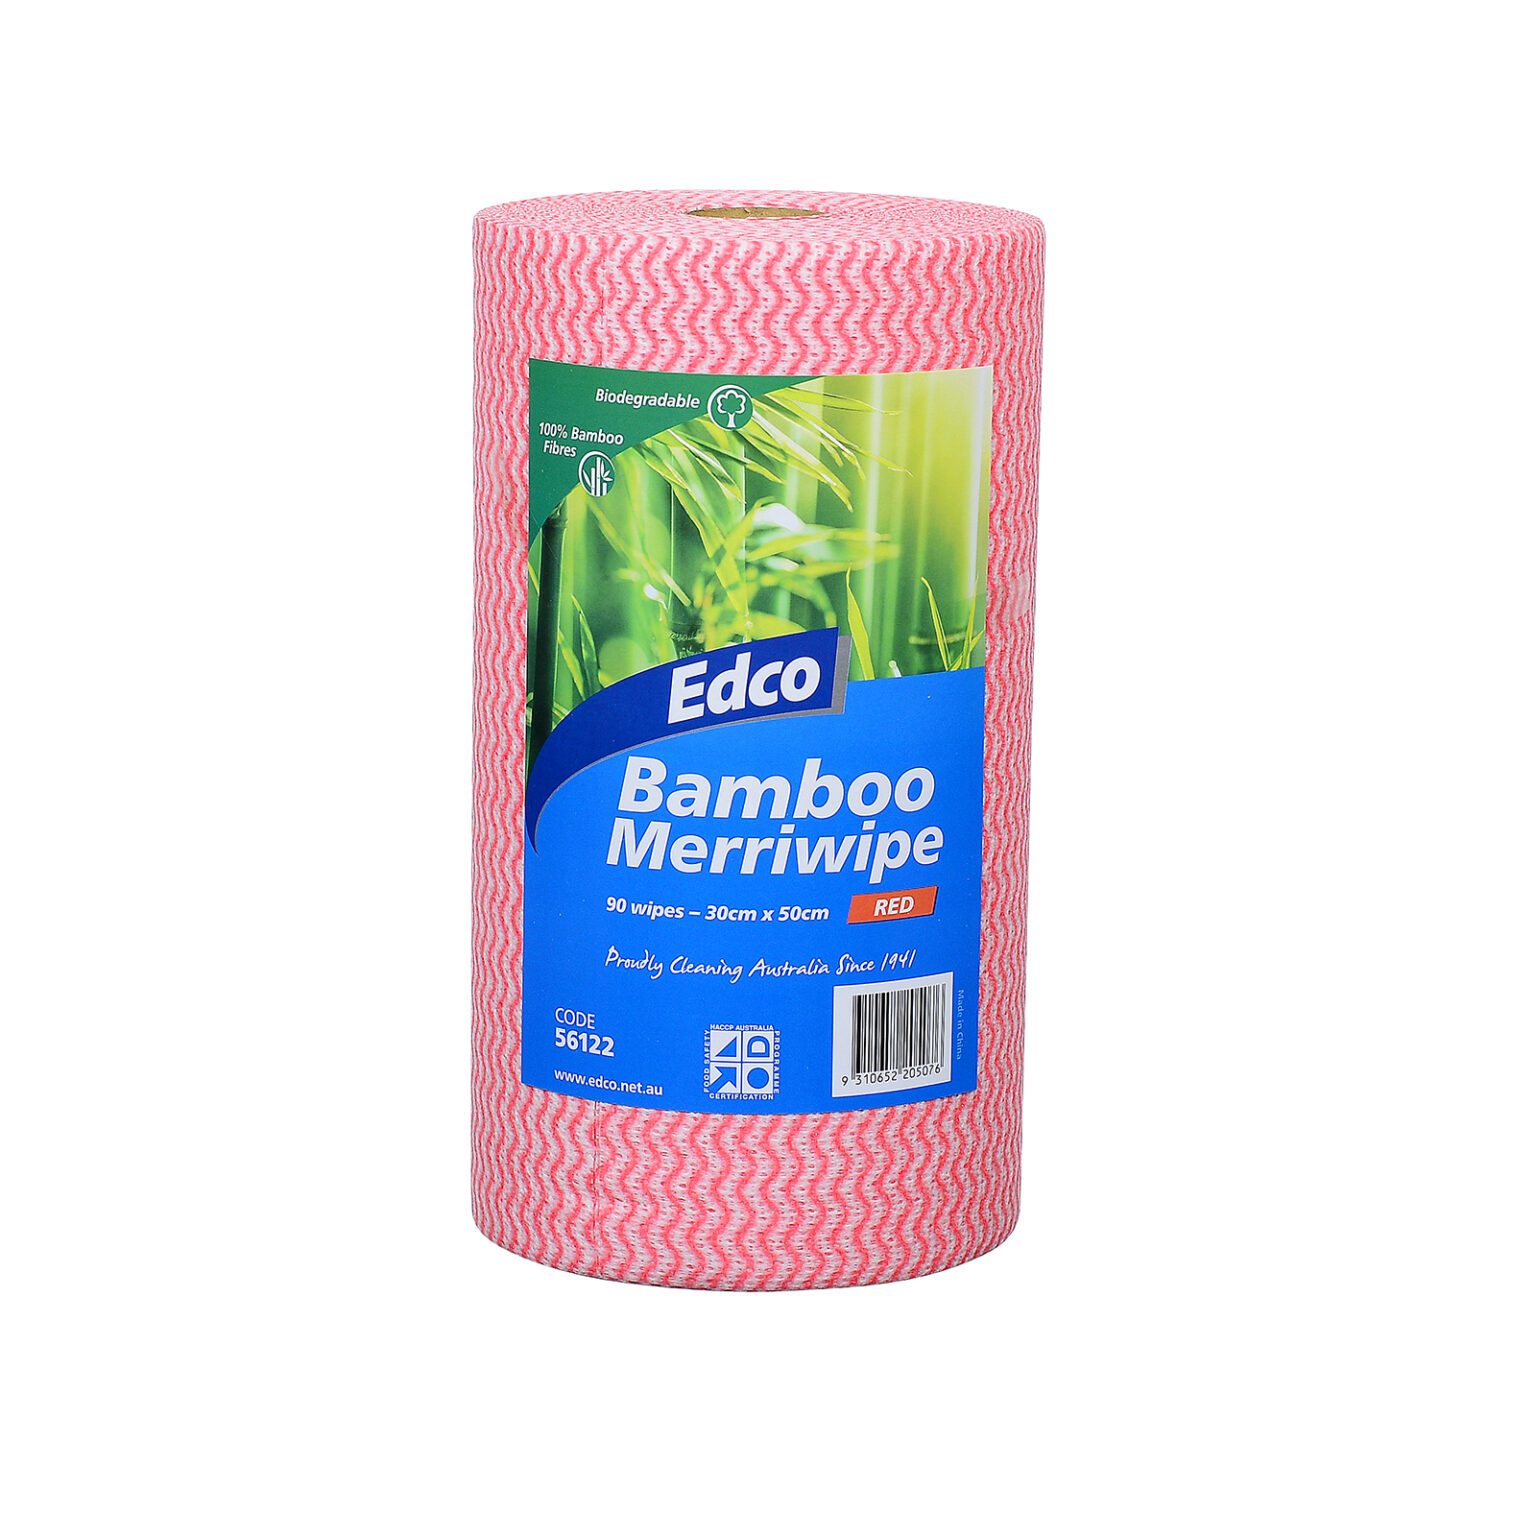 56122-Edco-Bamboo-Merriwipe-Red-IP